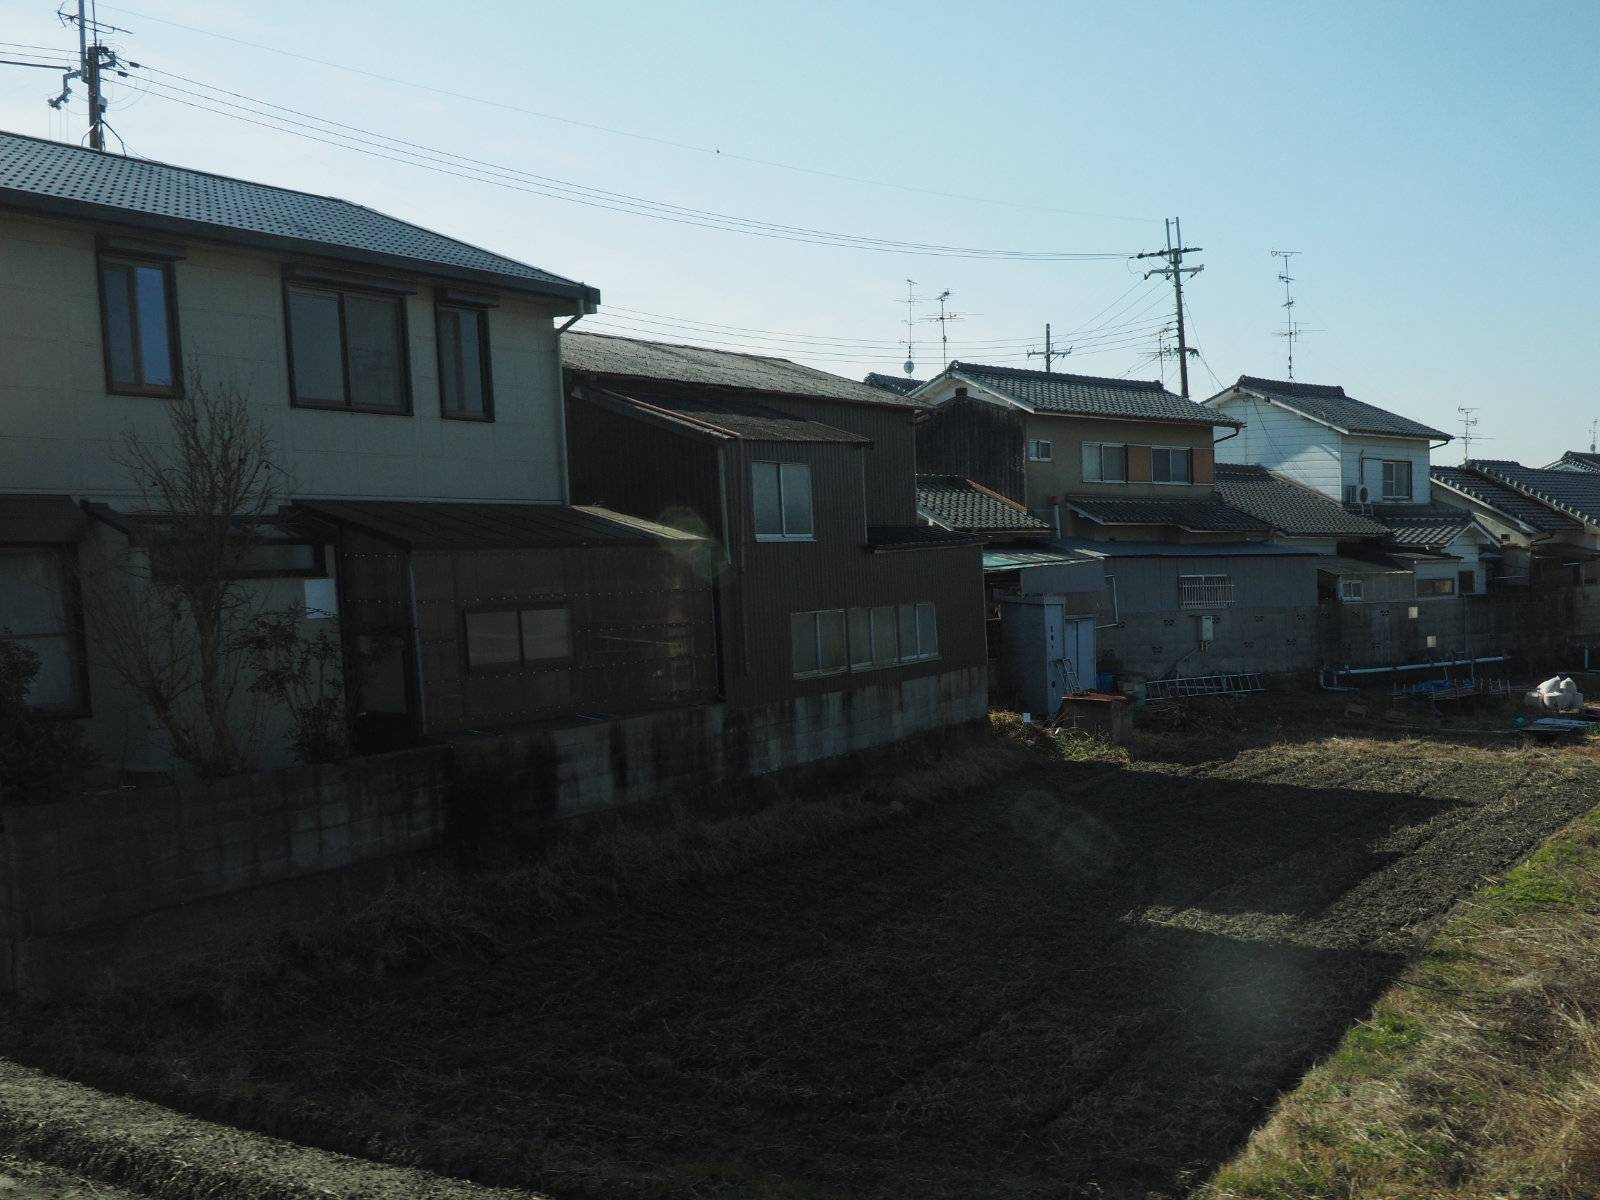 Rural houses